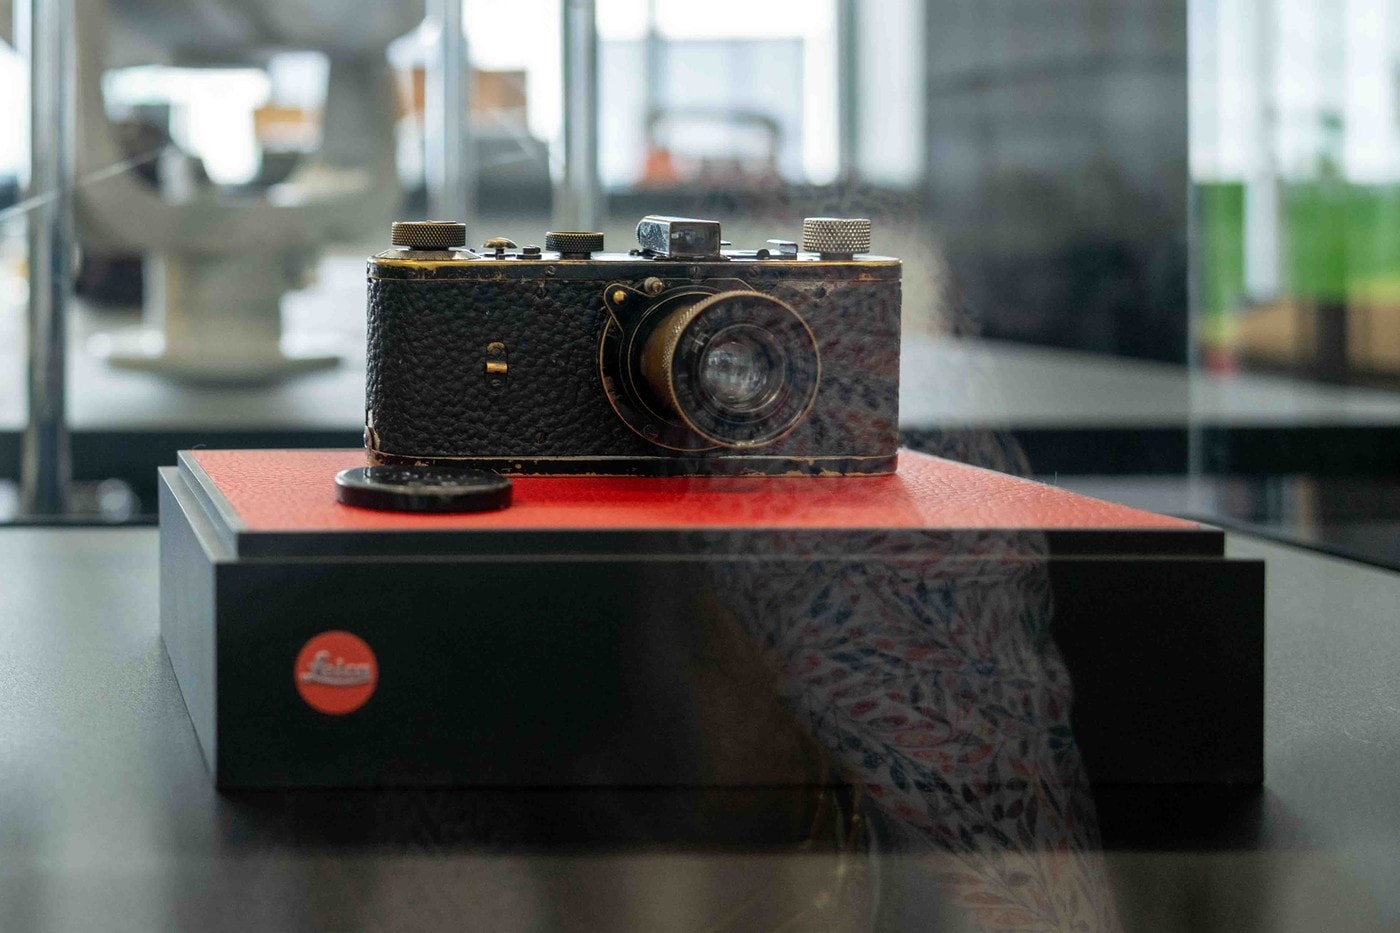 Leica 0 系列稀有原型機序號 105 以 €1,440 万欧元成为世界最贵相机